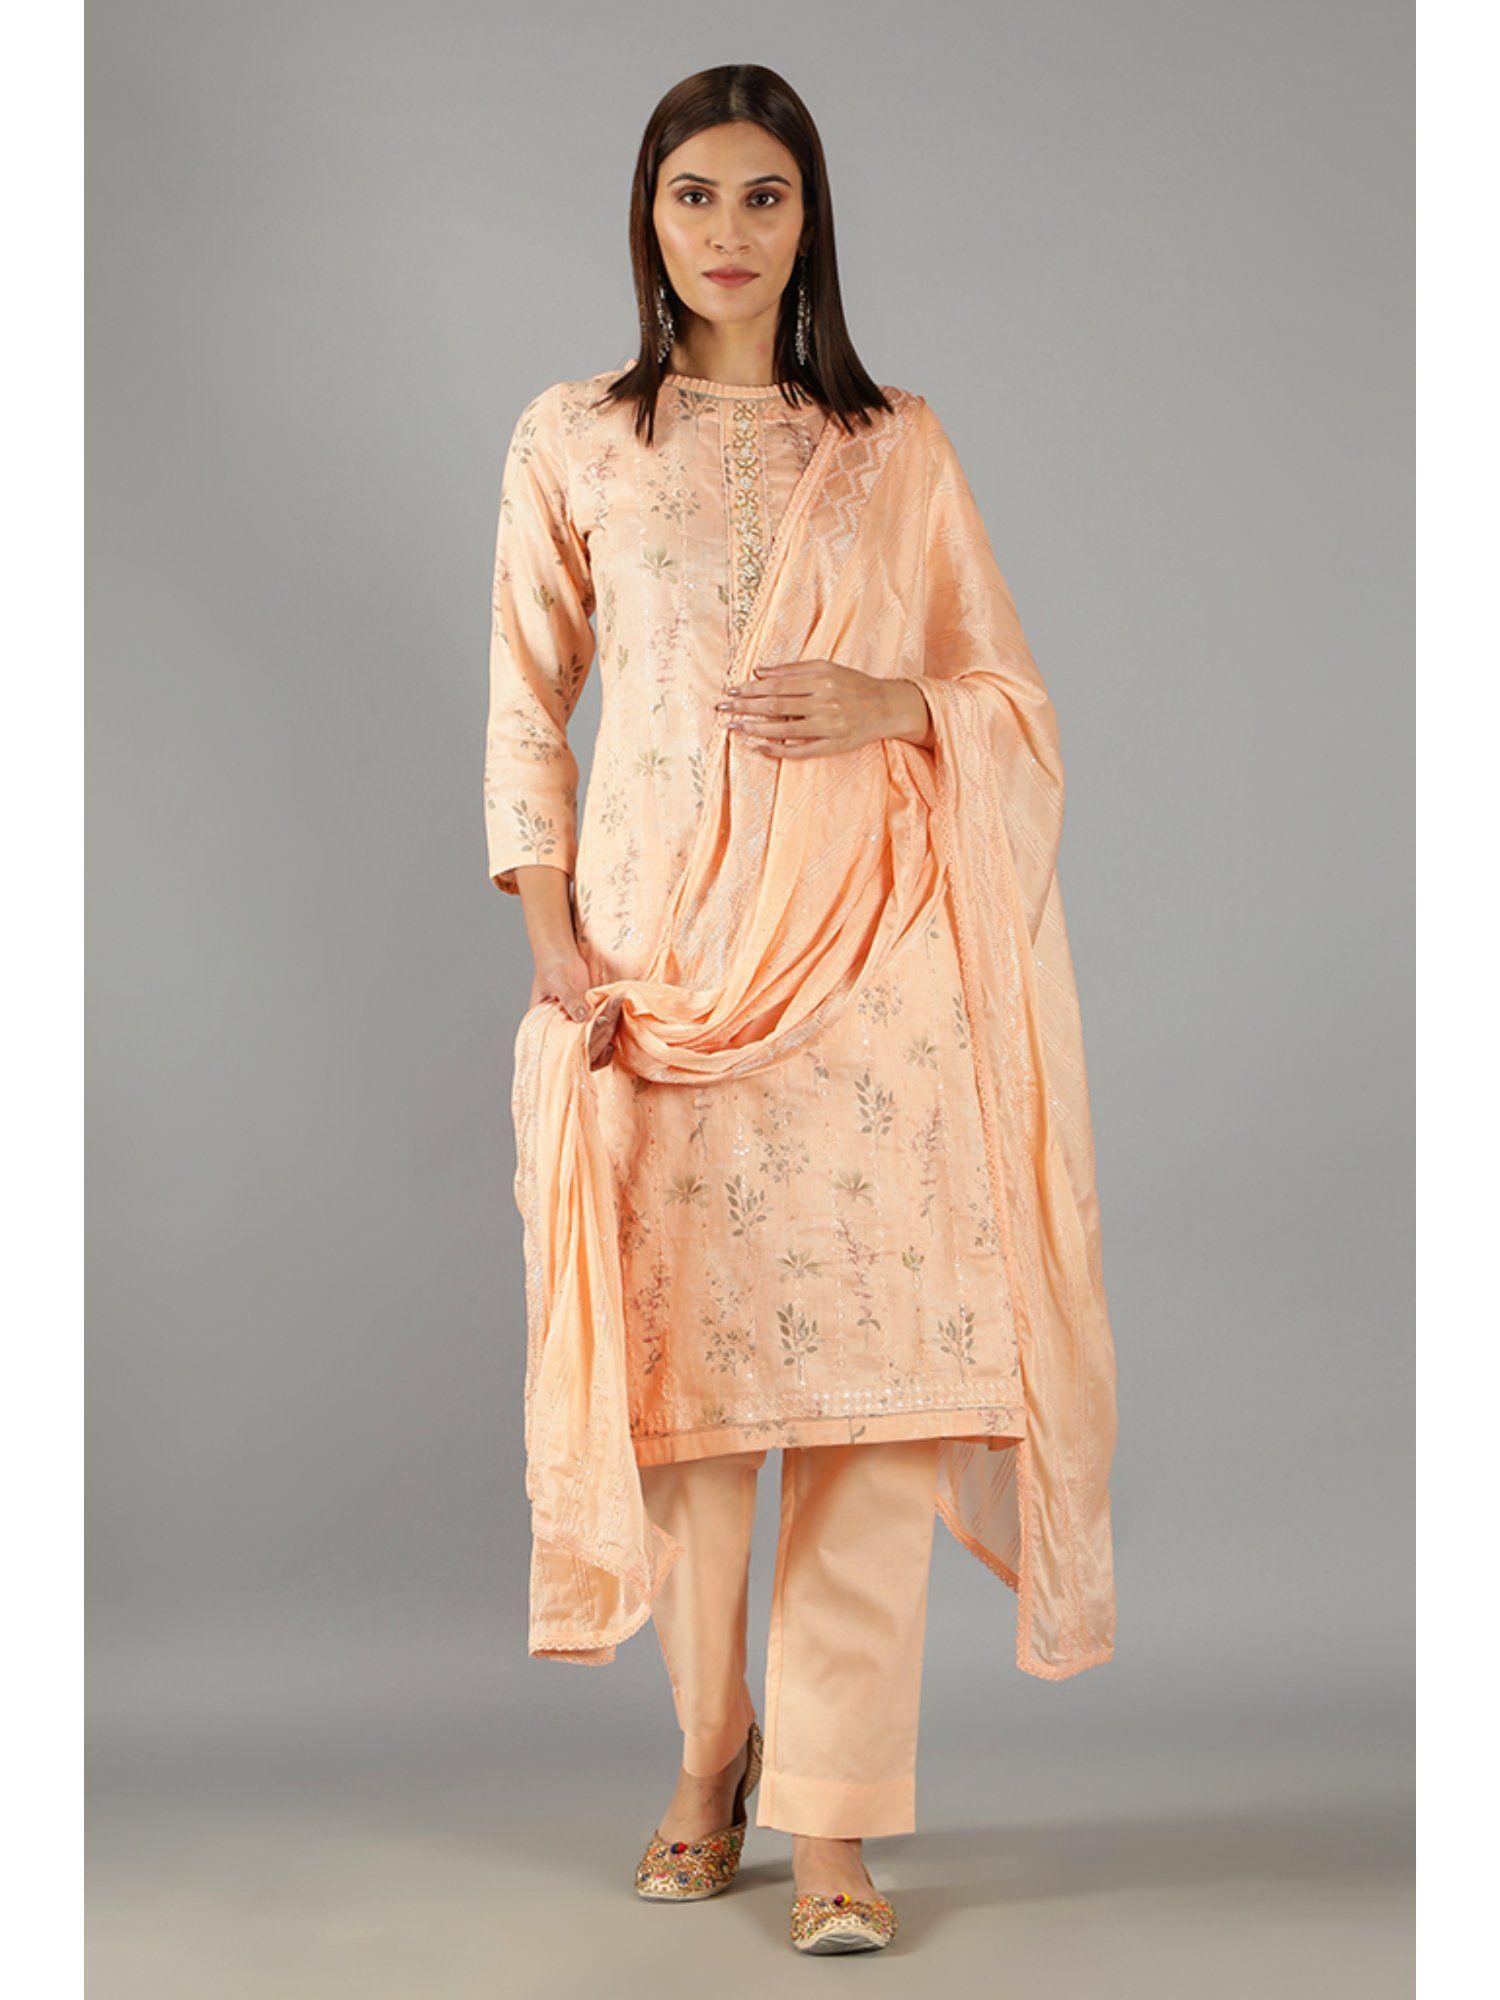 barara ethnics light orange floral printed embroidery kurta